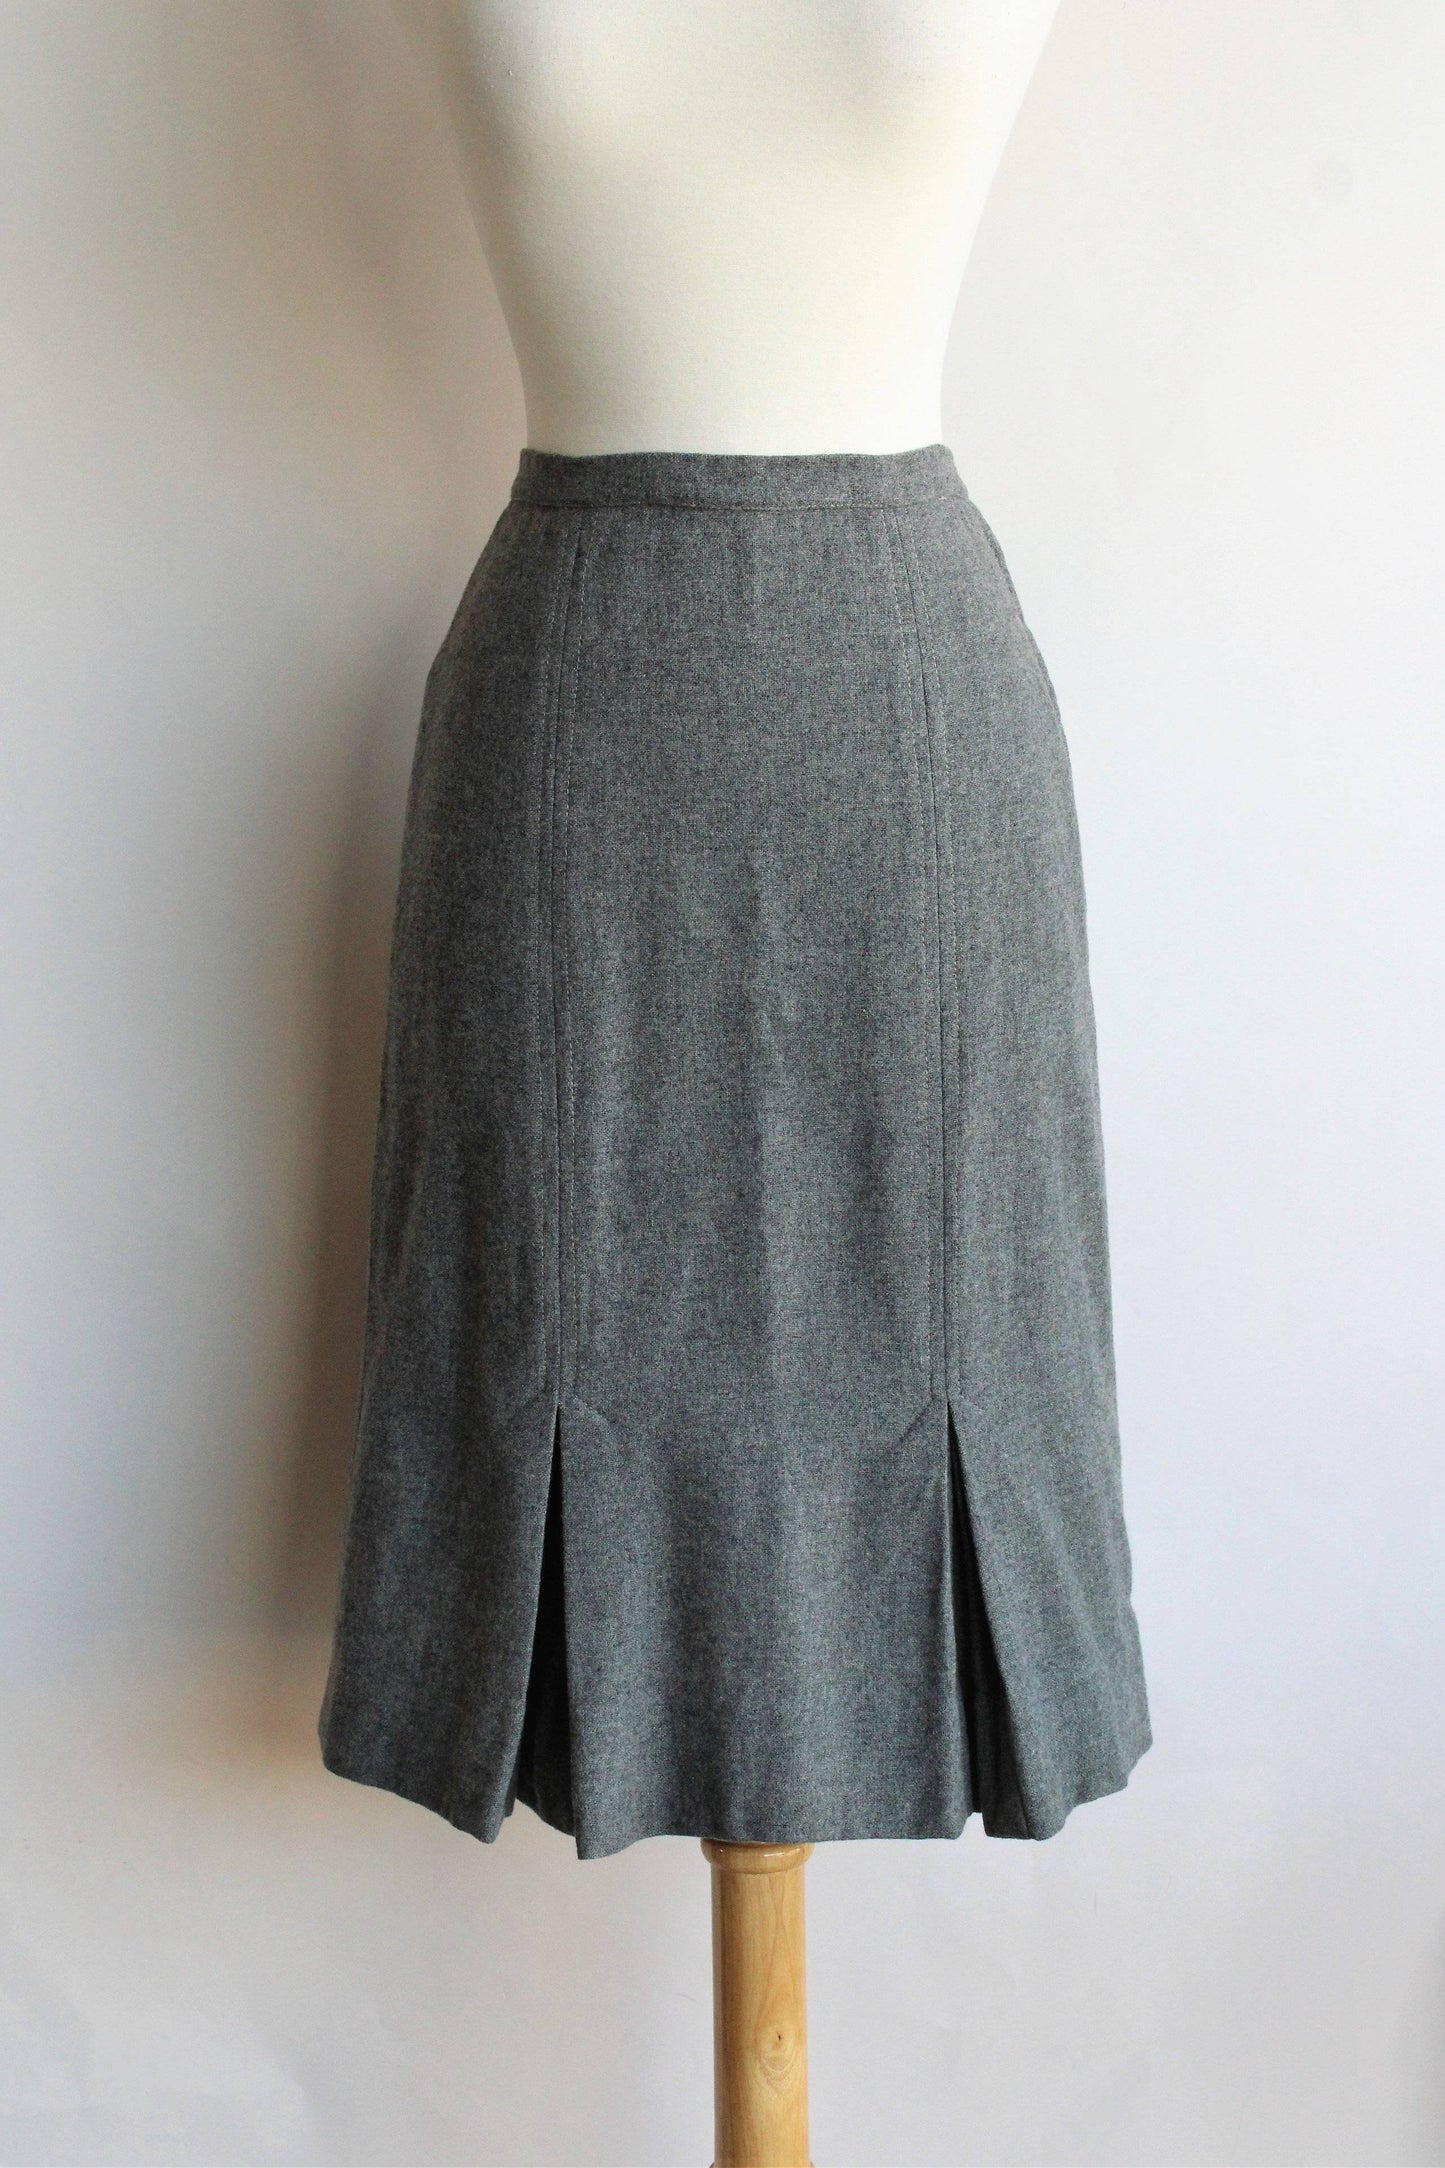 Vintage 1950s Grey Wool Skirt by Century of Boston – Toadstool Farm Vintage